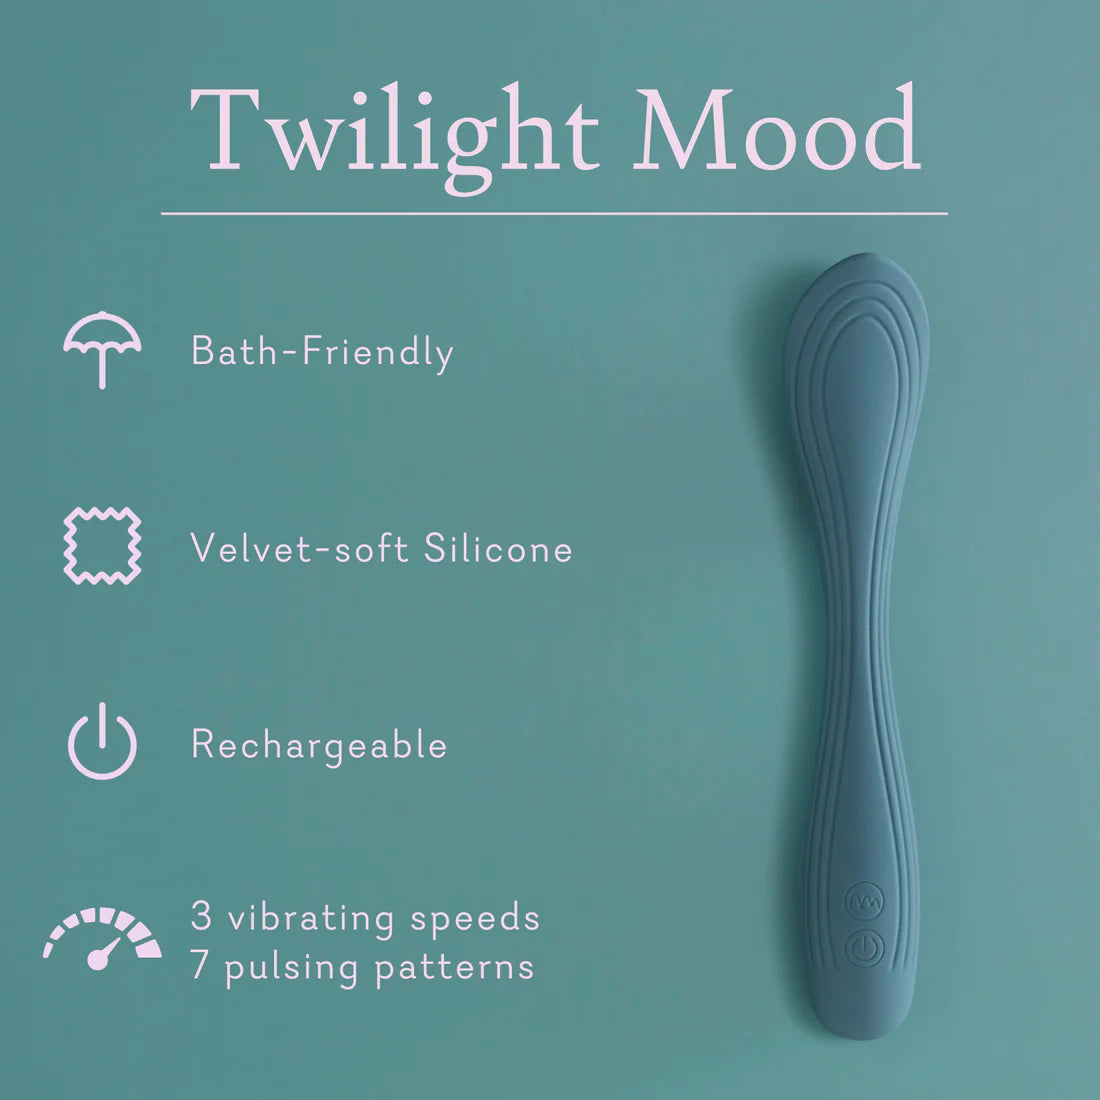 Twilight Mood (Flexible Wand Vibrator)